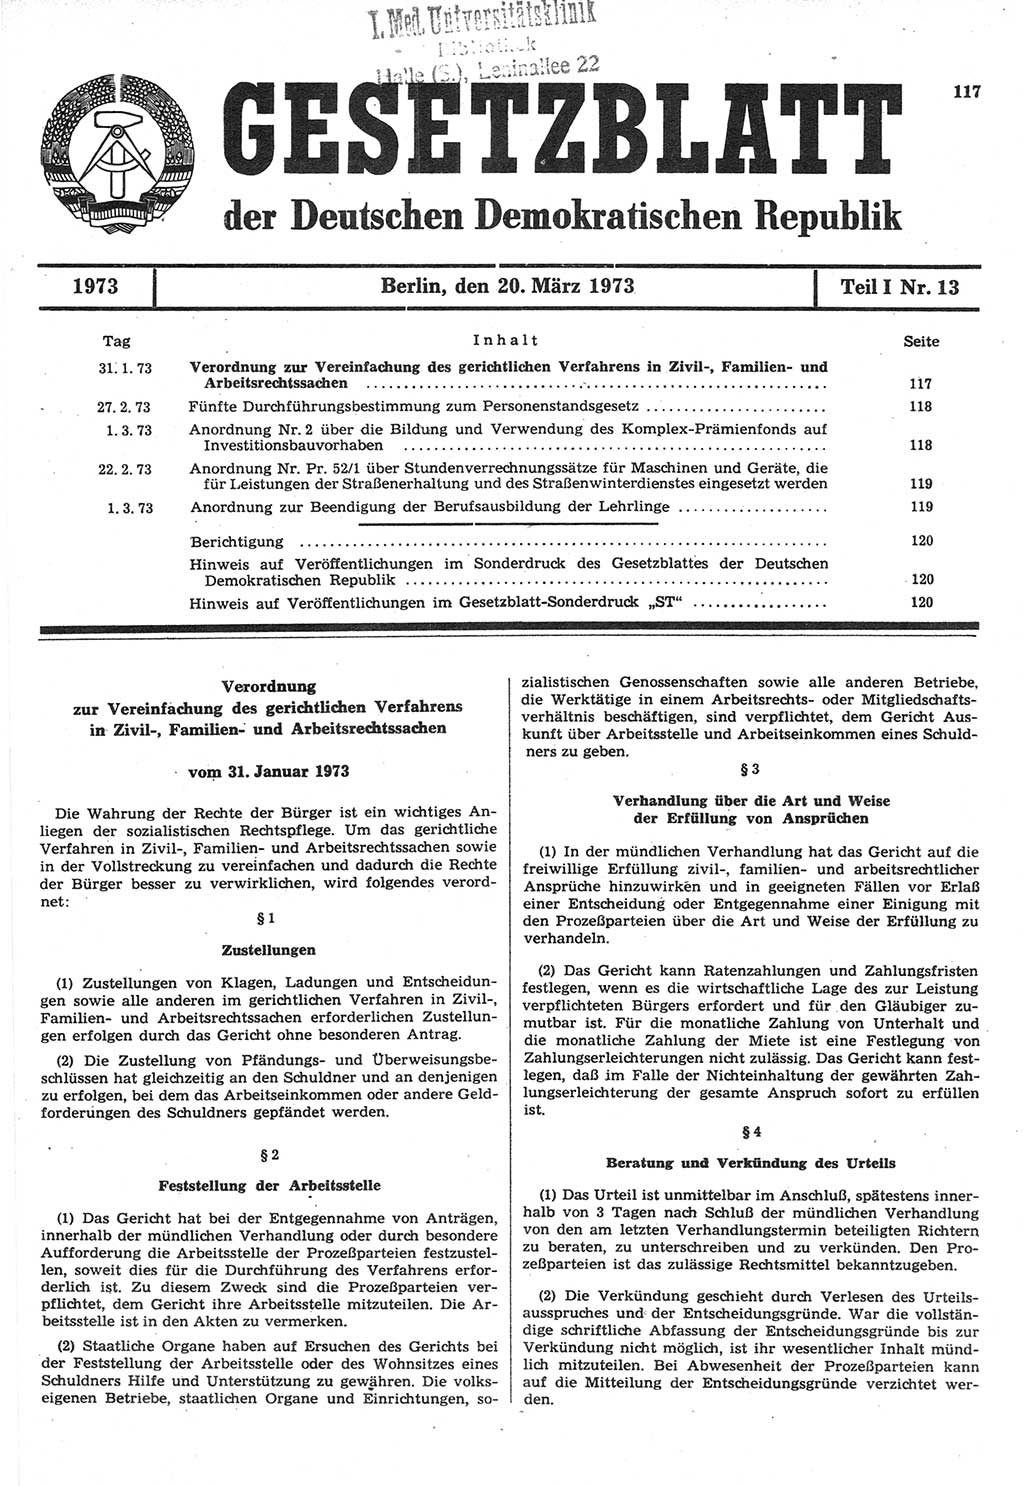 Gesetzblatt (GBl.) der Deutschen Demokratischen Republik (DDR) Teil Ⅰ 1973, Seite 117 (GBl. DDR Ⅰ 1973, S. 117)